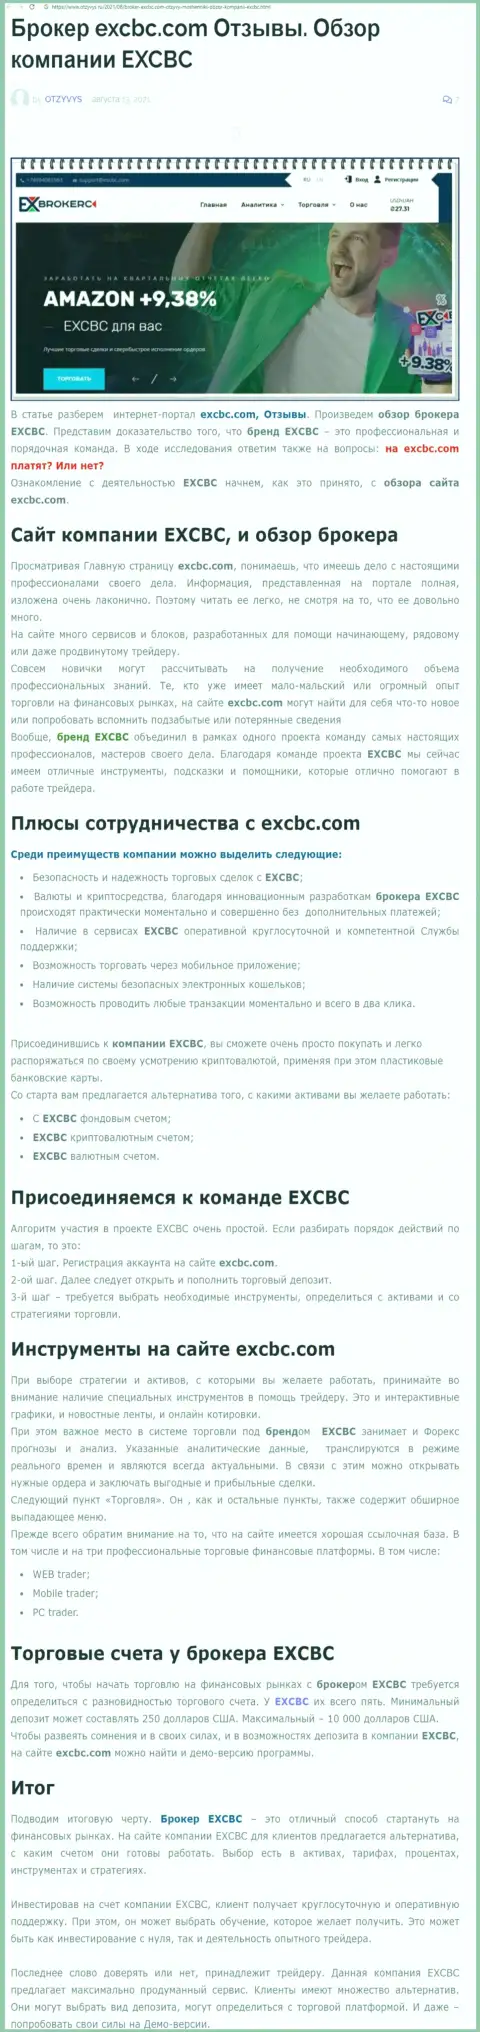 ЕХ Брокерс - это честная и надежная ФОРЕКС компания, это следует из статьи на сайте otzyvys ru